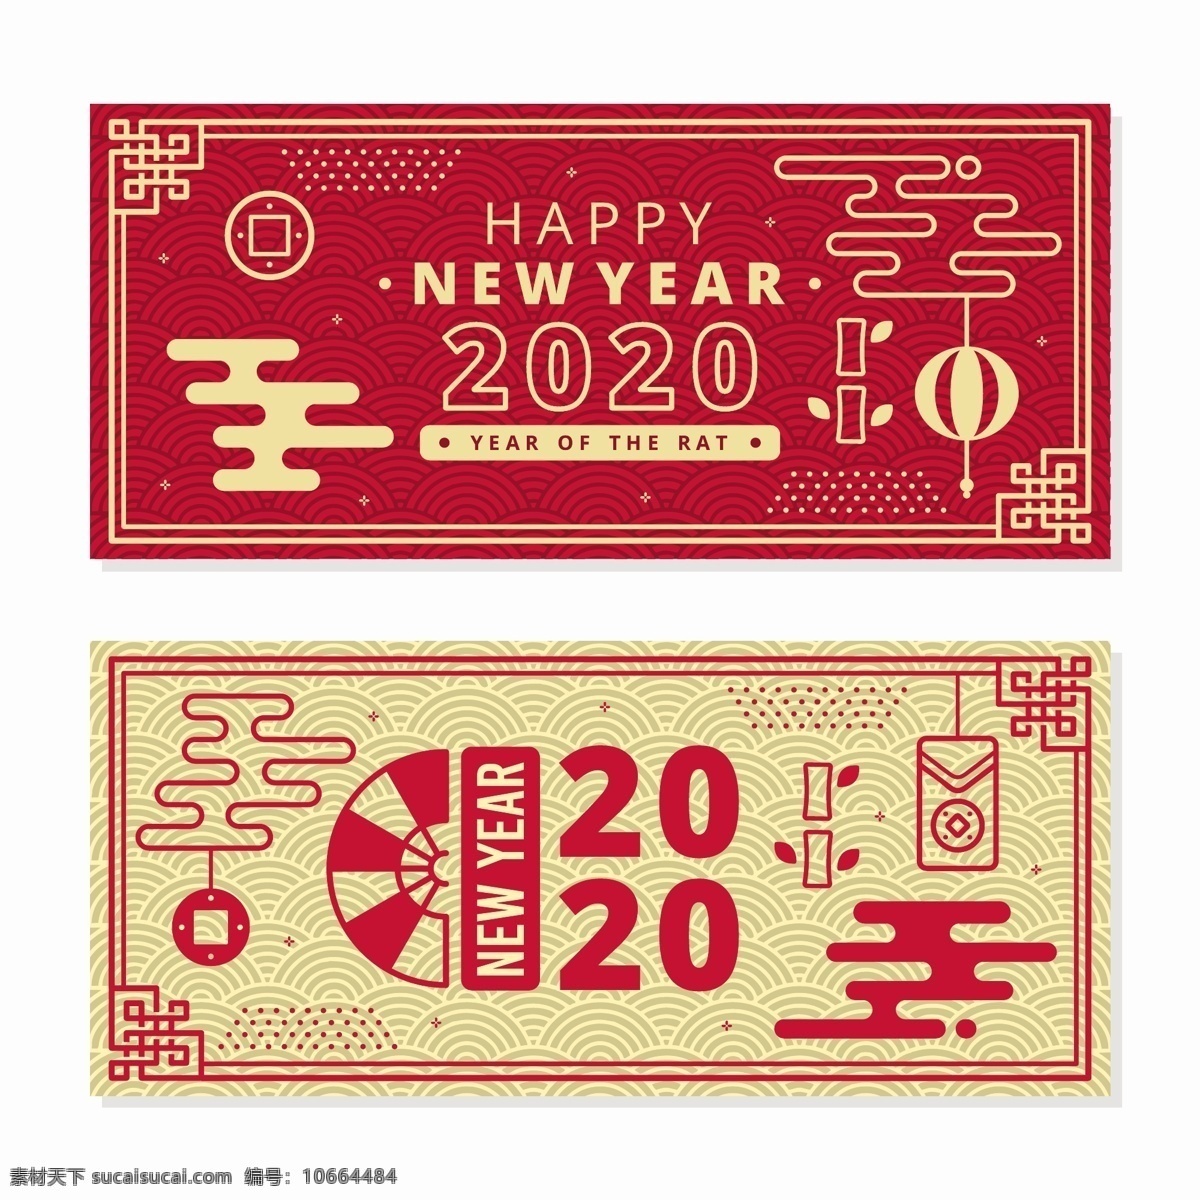 中国 新年 元素 横板 2020 2020年 新年快乐 春节 红包 铜钱 红色 金色 分层